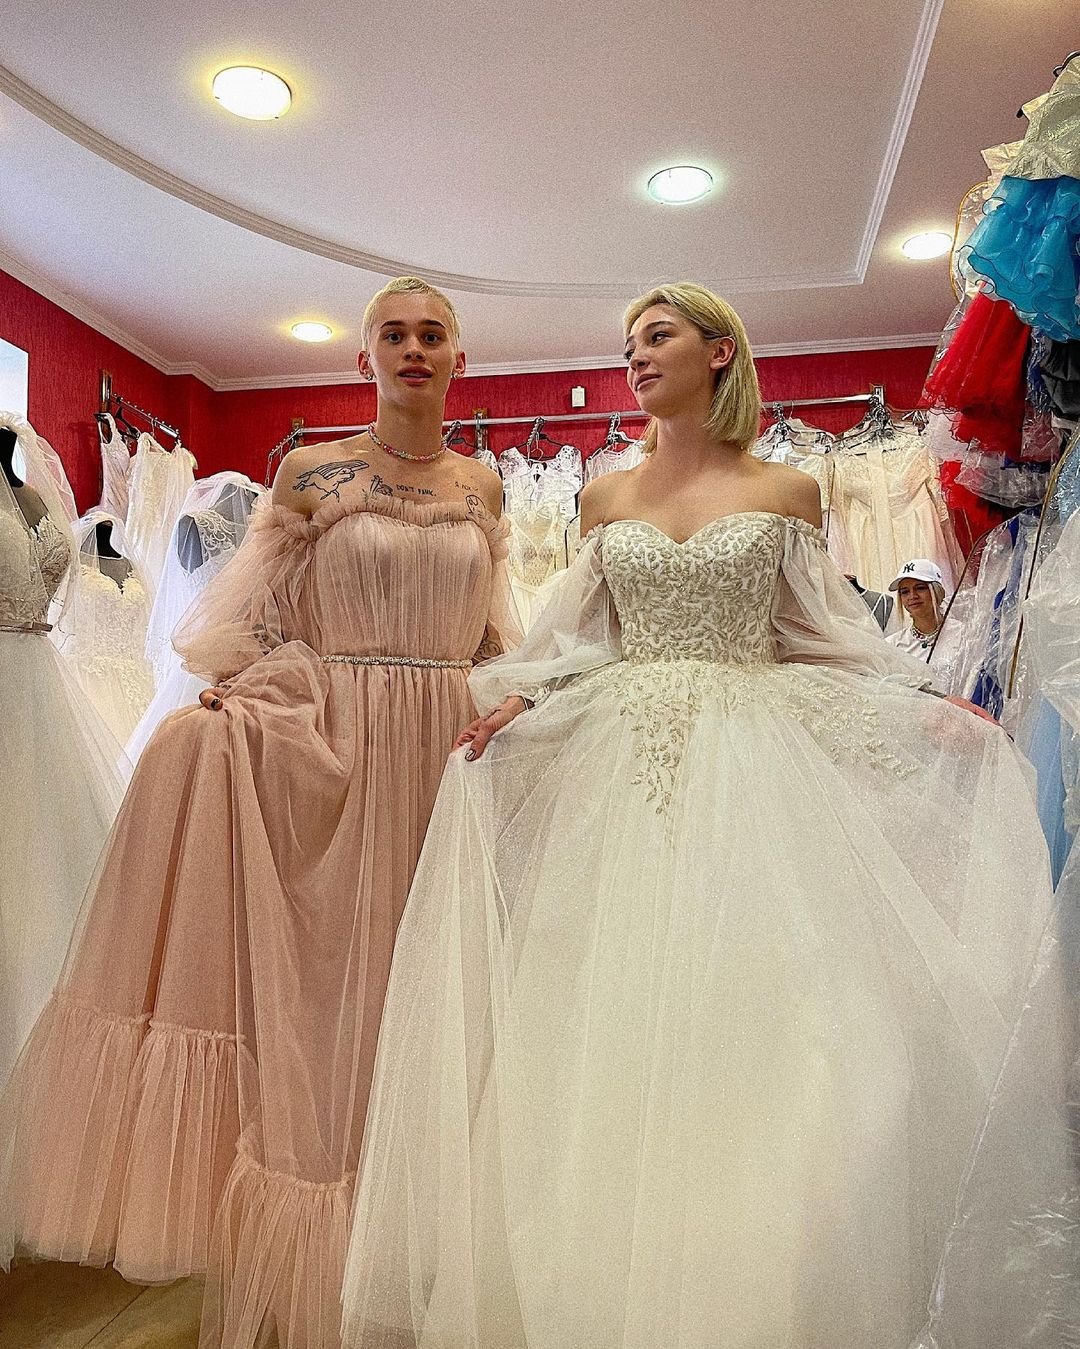 Даня Милохин вместе с Настей Ивлеевой примерил свадебное платье